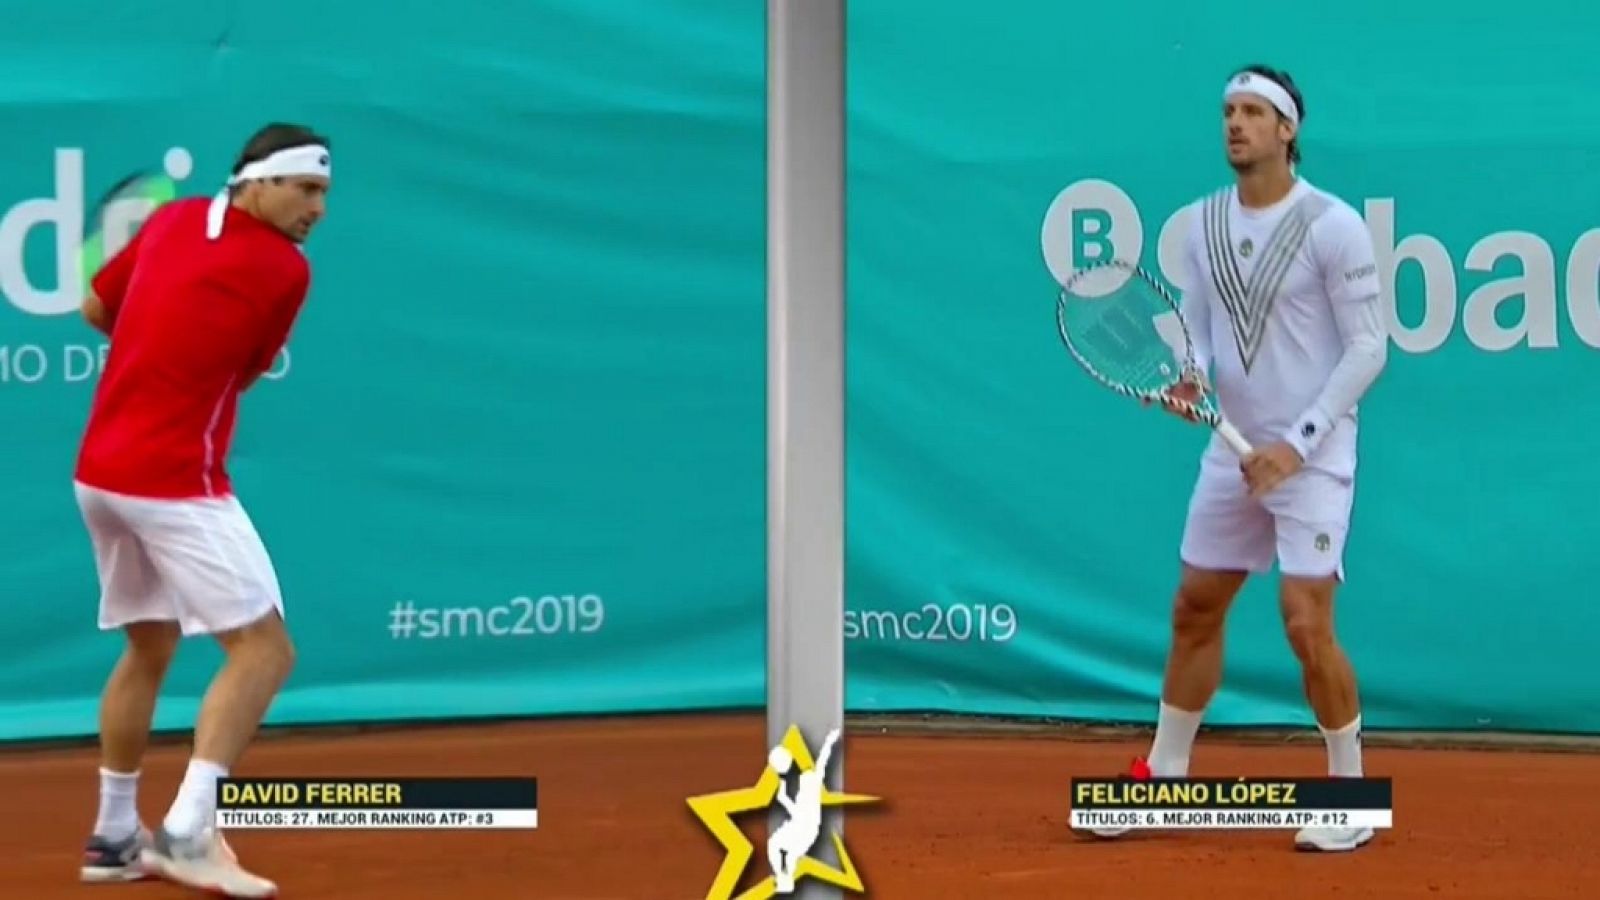 Tenis - Senior Master Cup 2019 2º partido: David Ferrer - Feliciano López